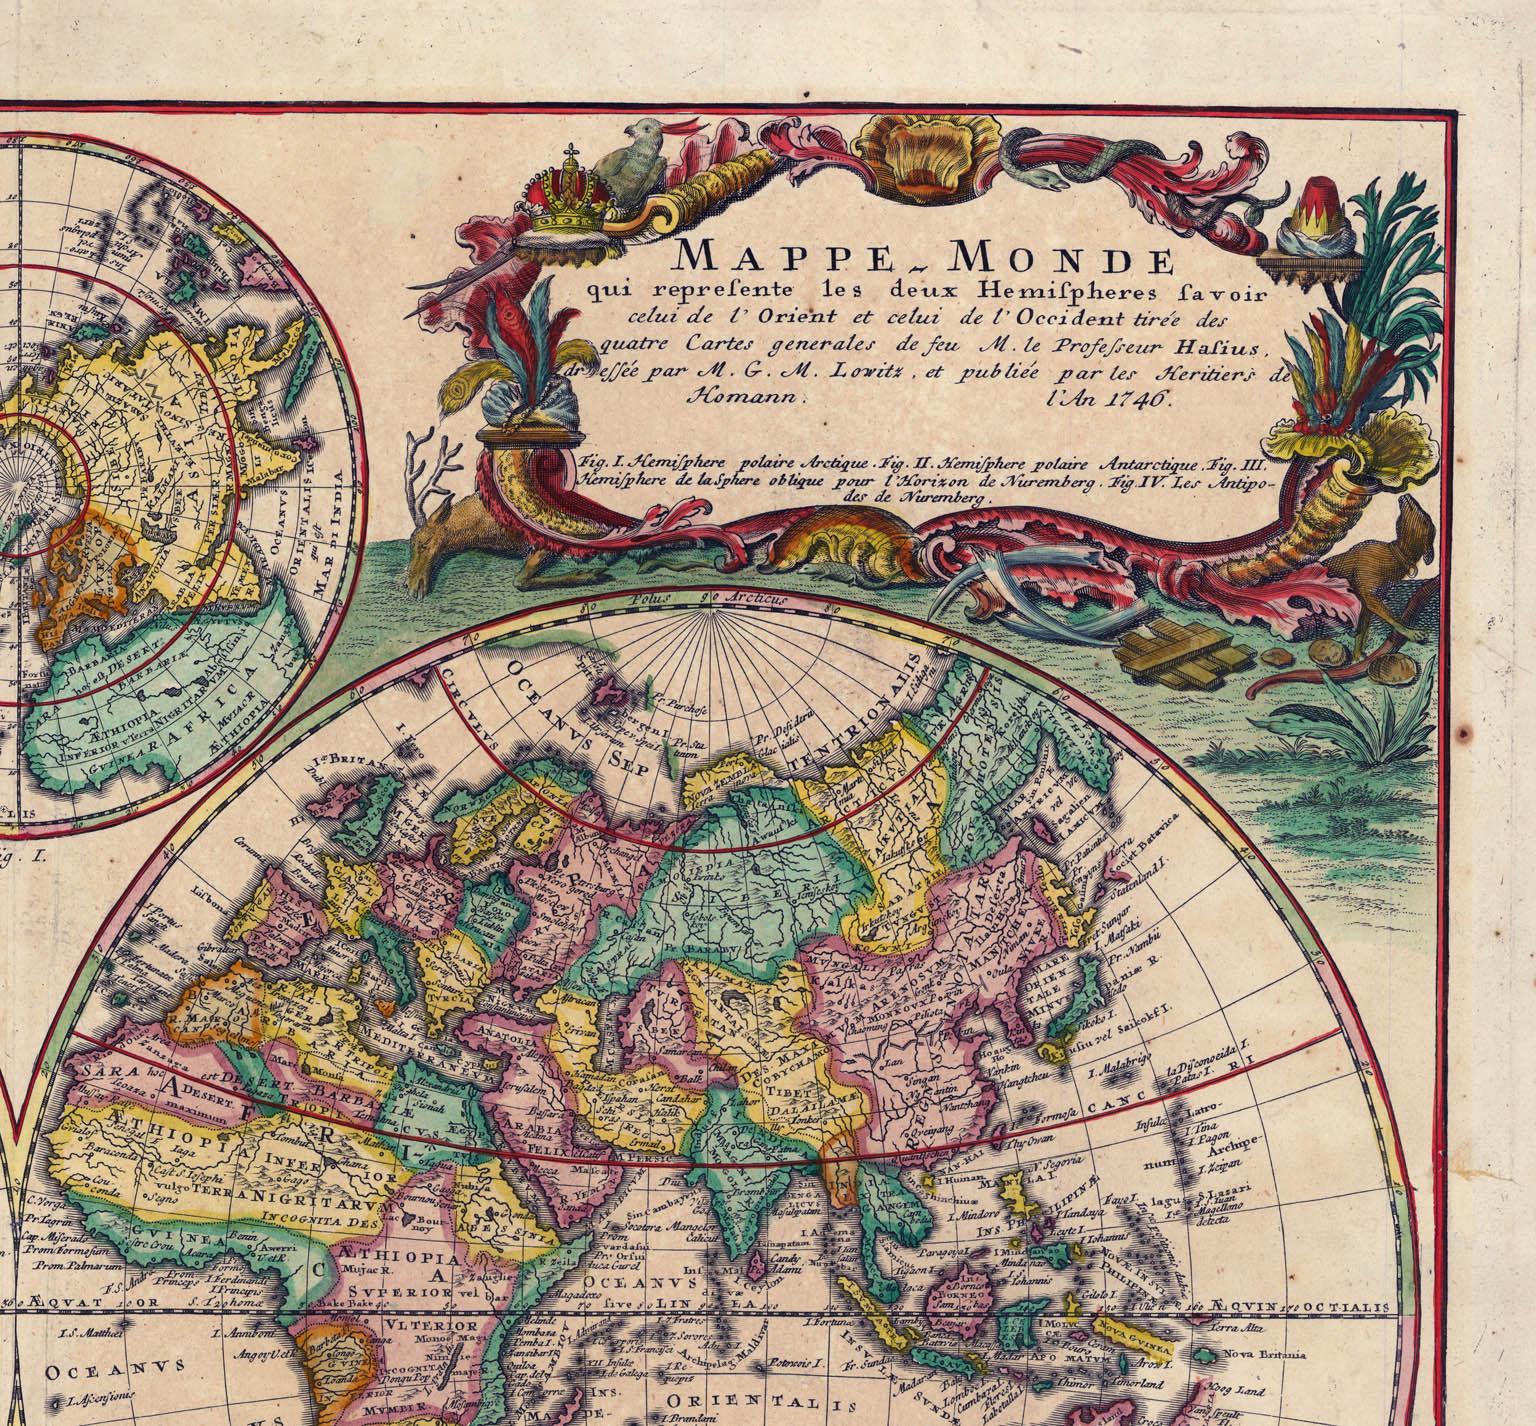 Planiglobii Terrestris Mappa Universalis / Mappe Monde (Beige), Print, von Homann Heirs